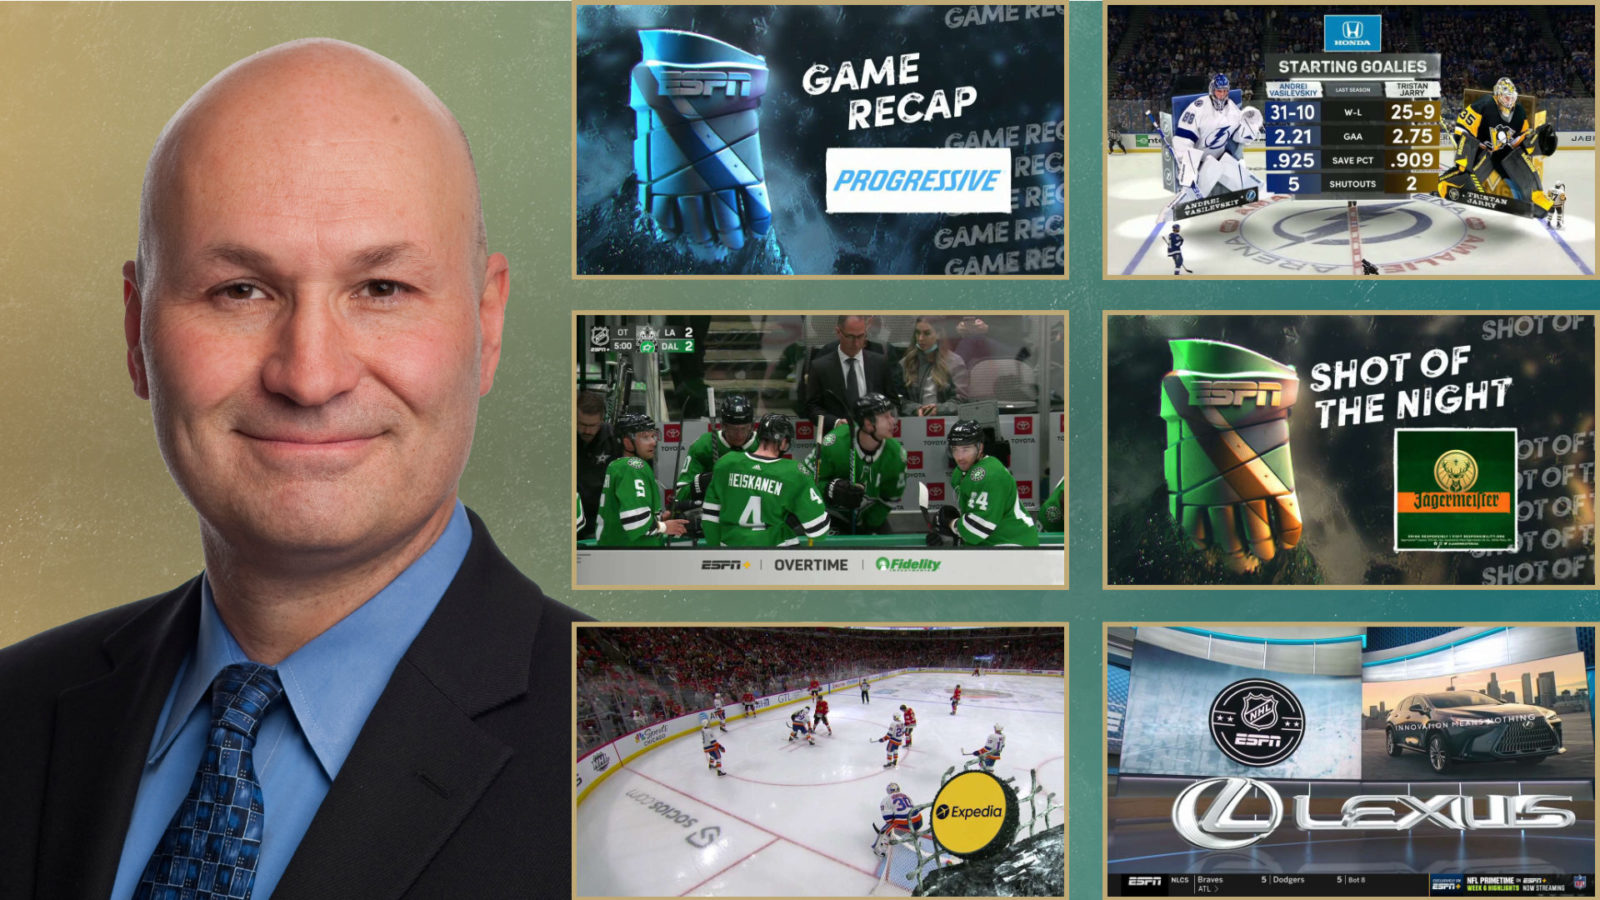 Three Exclusive NHL Games This Week on ESPN+/Hulu - ESPN Press Room U.S.